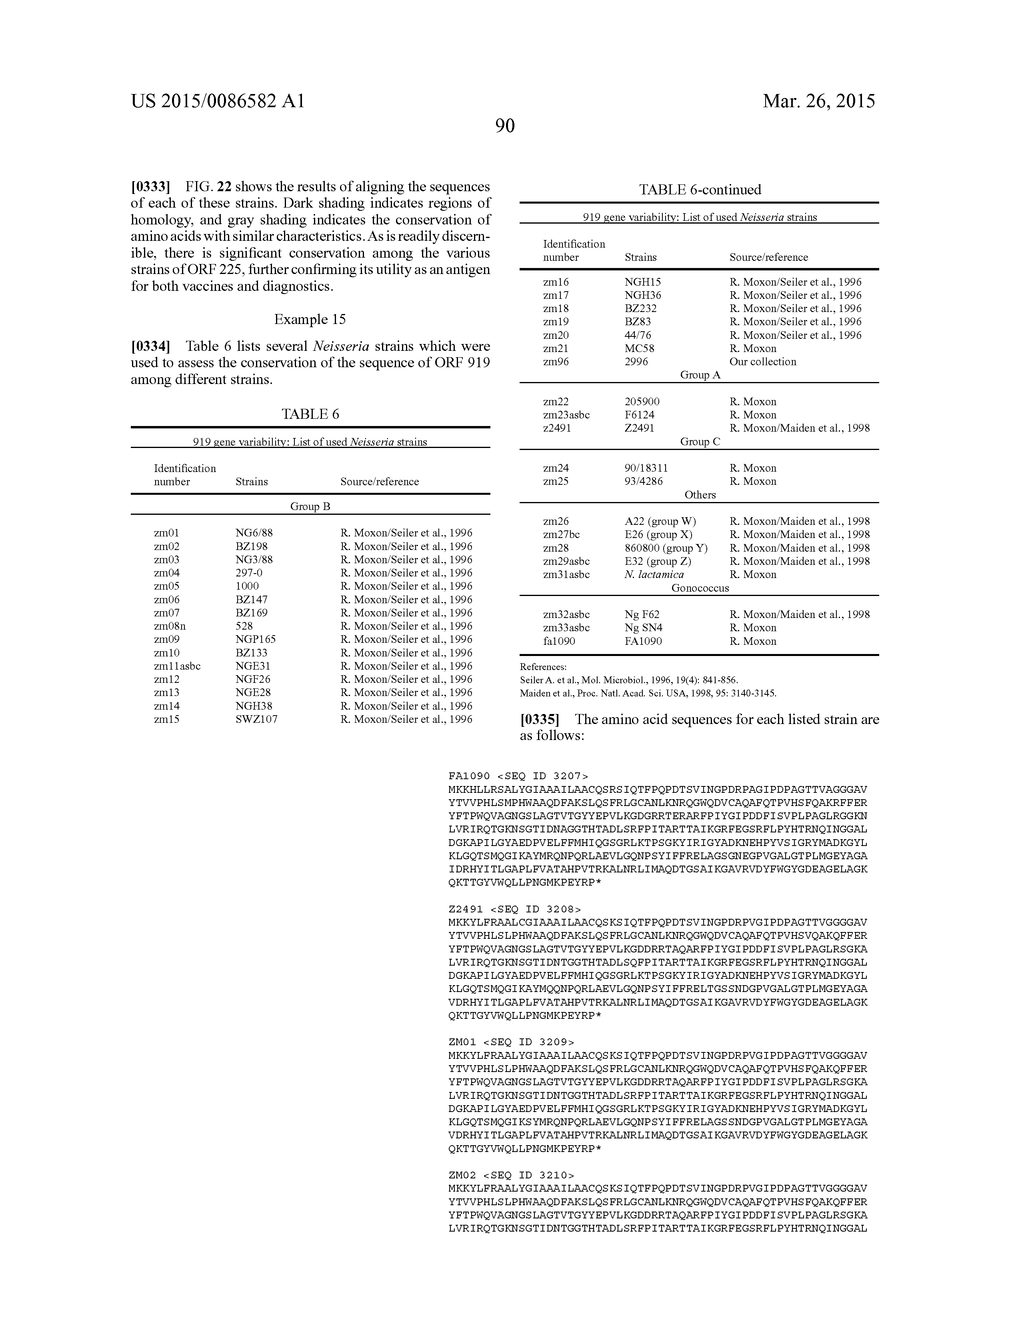 NEISSERIA MENINGITIDIS ANTIGENS AND COMPOSITIONS - diagram, schematic, and image 122